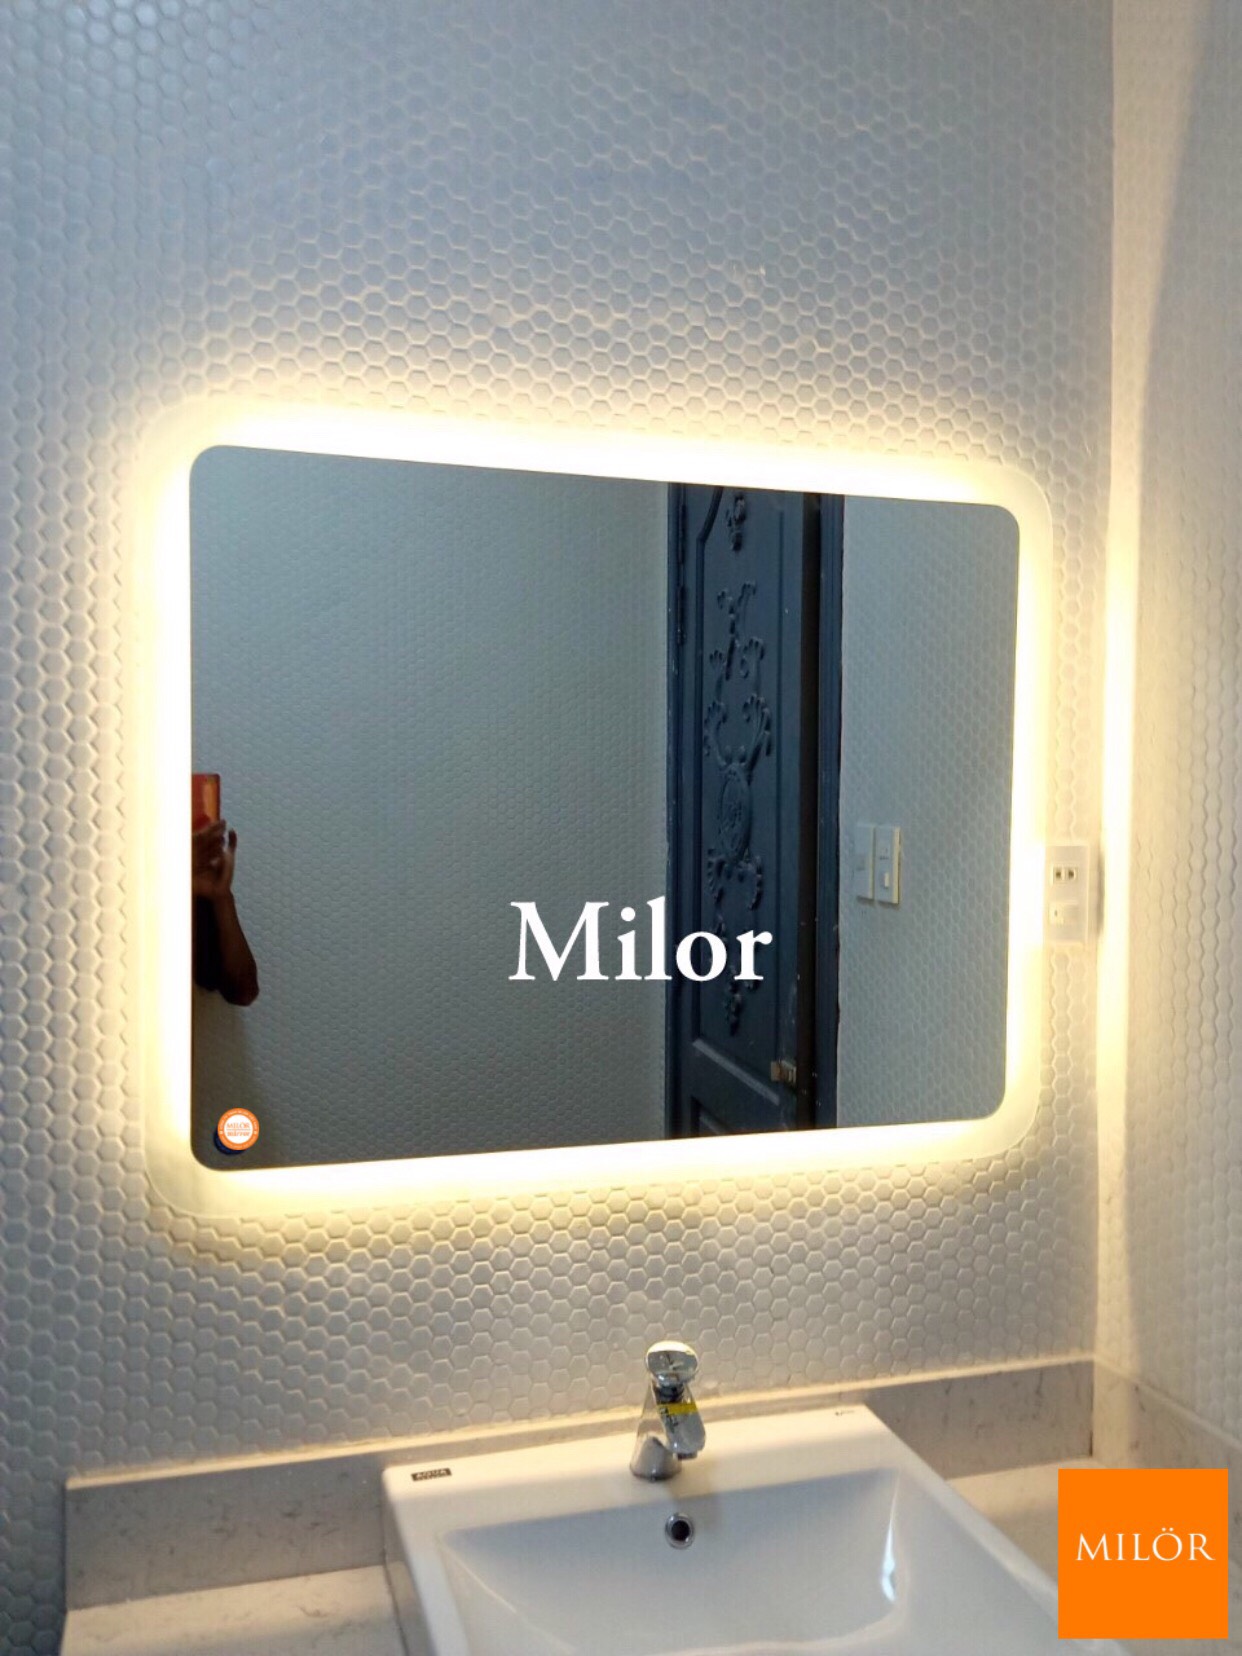 Gương nhà tắm đèn led Milor sẽ giúp cho việc trang điểm và cạo râu của bạn trở nên thuận tiện hơn. Với ánh sáng trung thực và thiết kế độc đáo, gương Milor sẽ là điểm nhấn cho căn phòng tắm của bạn.